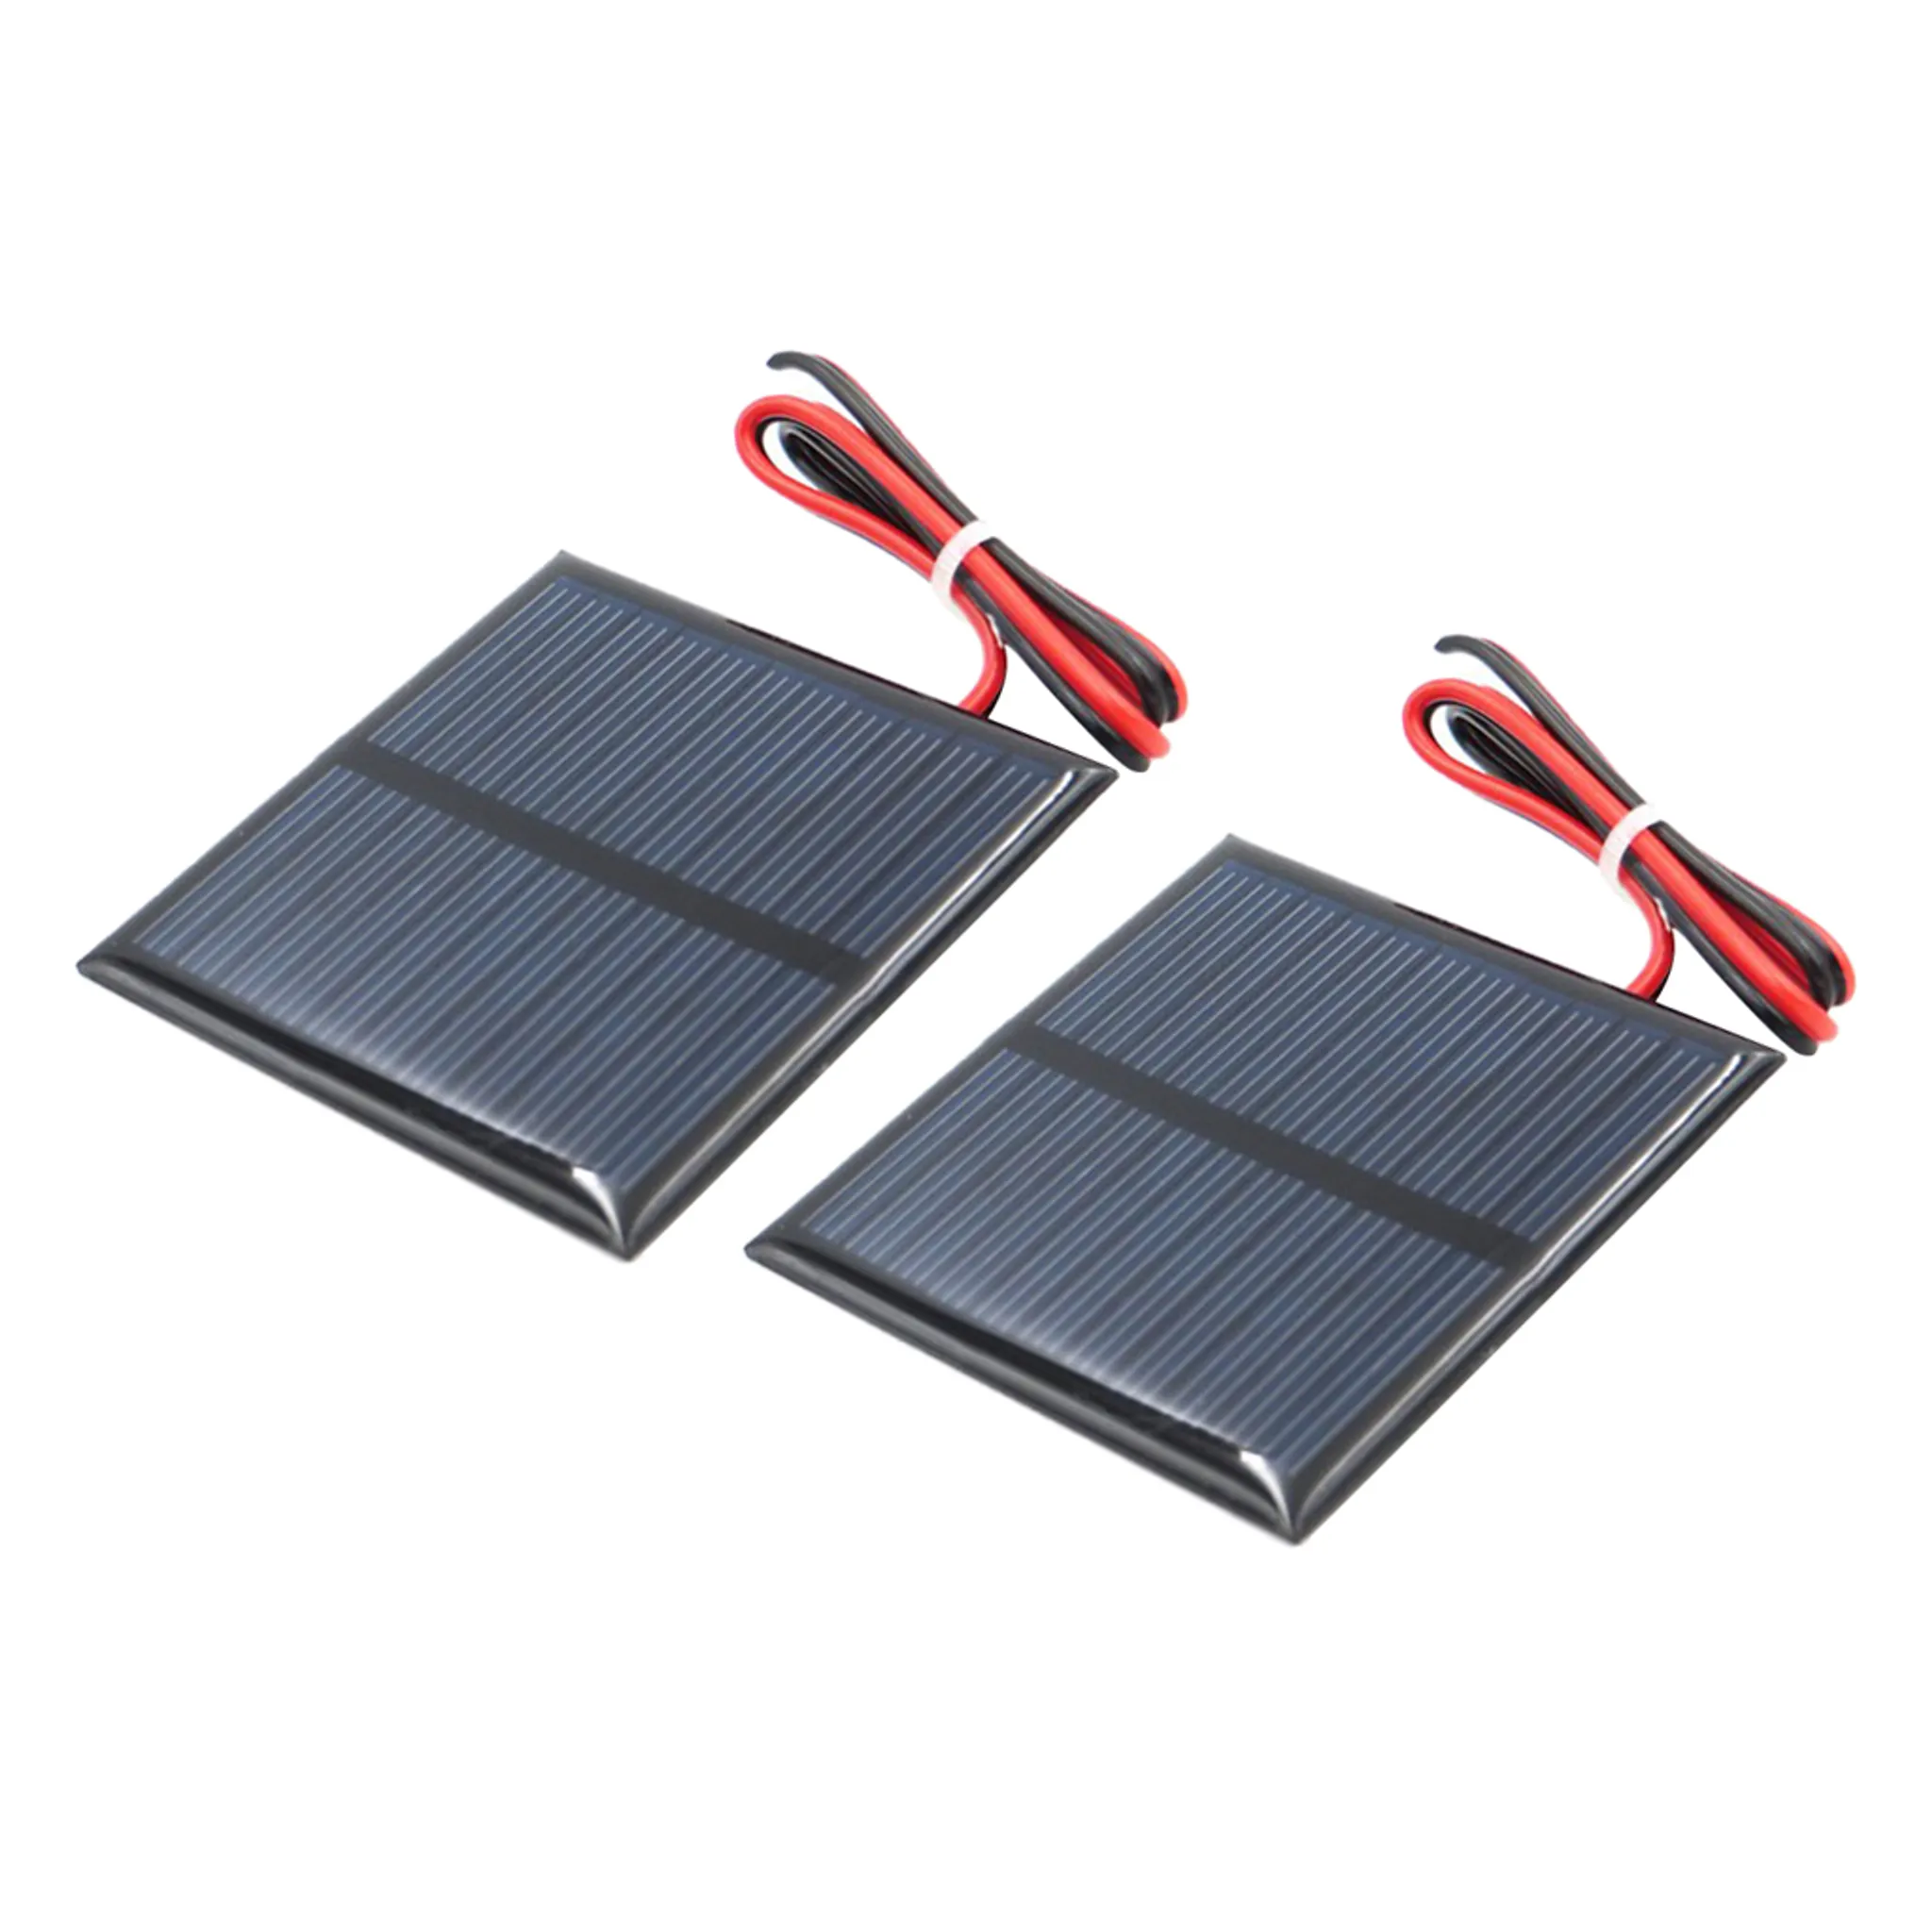 B 4V 60x80mm Perfeclan Kleine Solarmodul Polykristalline Solarzelle DIY Solarpanel Ladegerät für Handys Spielzeuge 